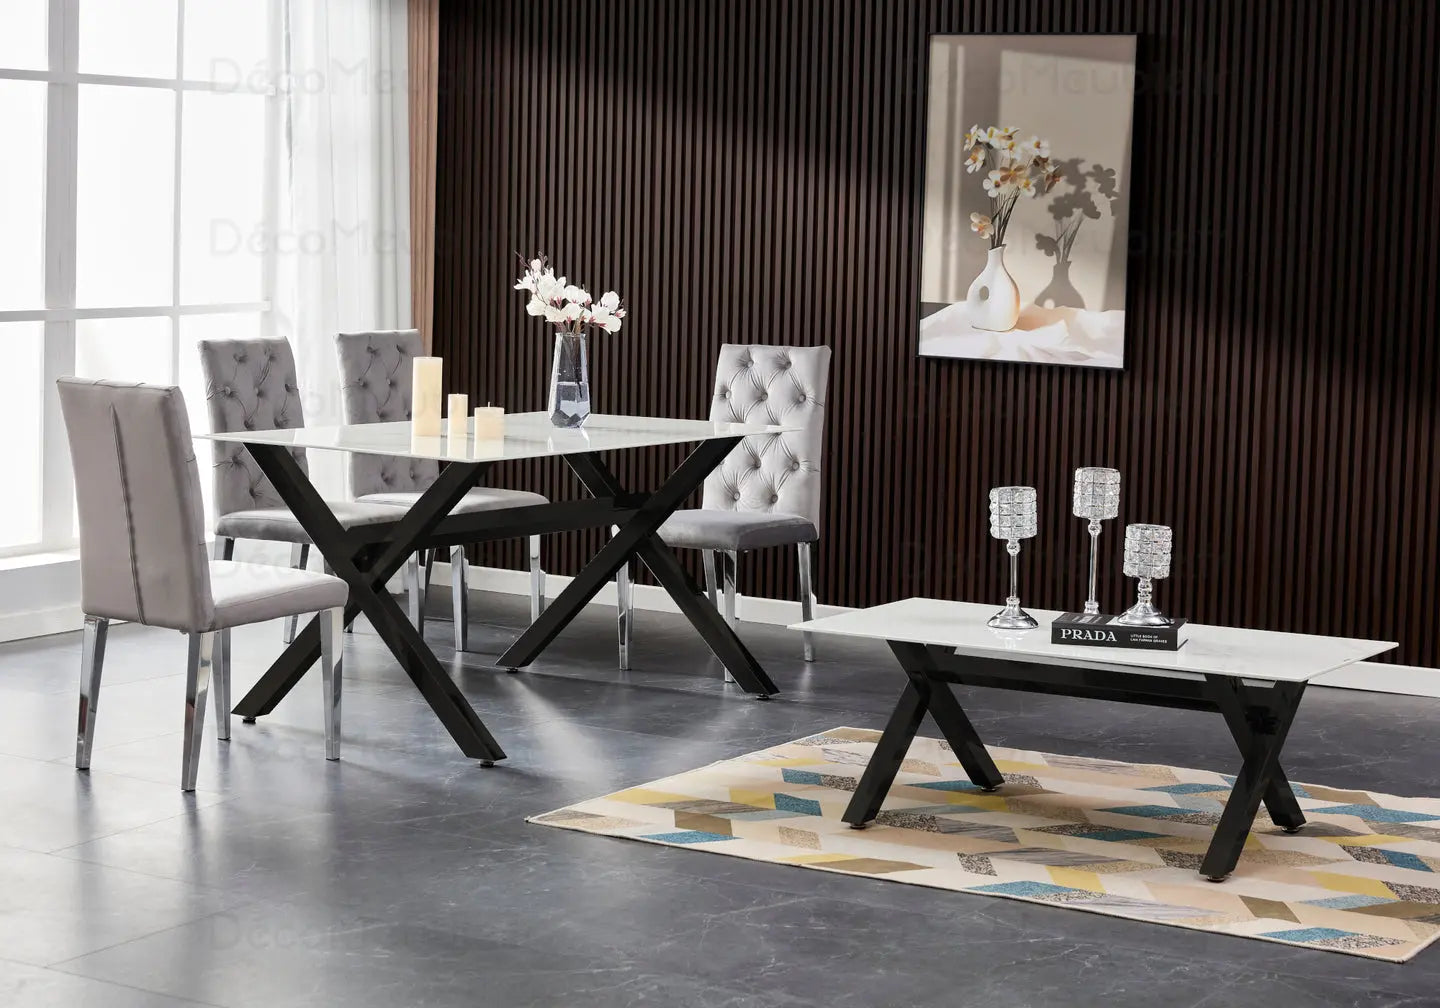 Table à manger marbre blanc pied noir CROSS New Design